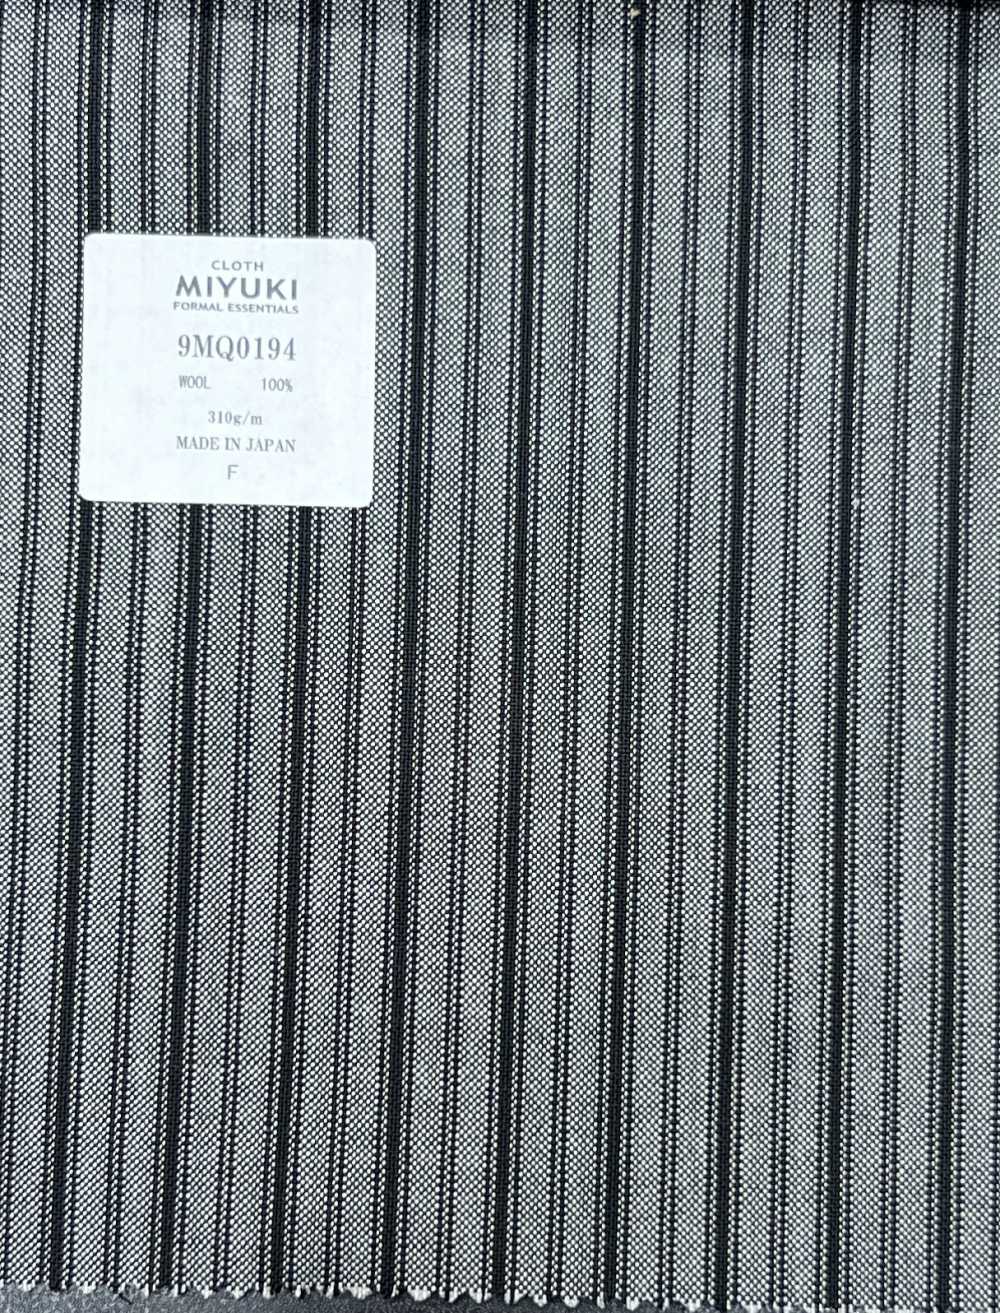 9MQ0194 MIYUKI FORMEL[Textile]